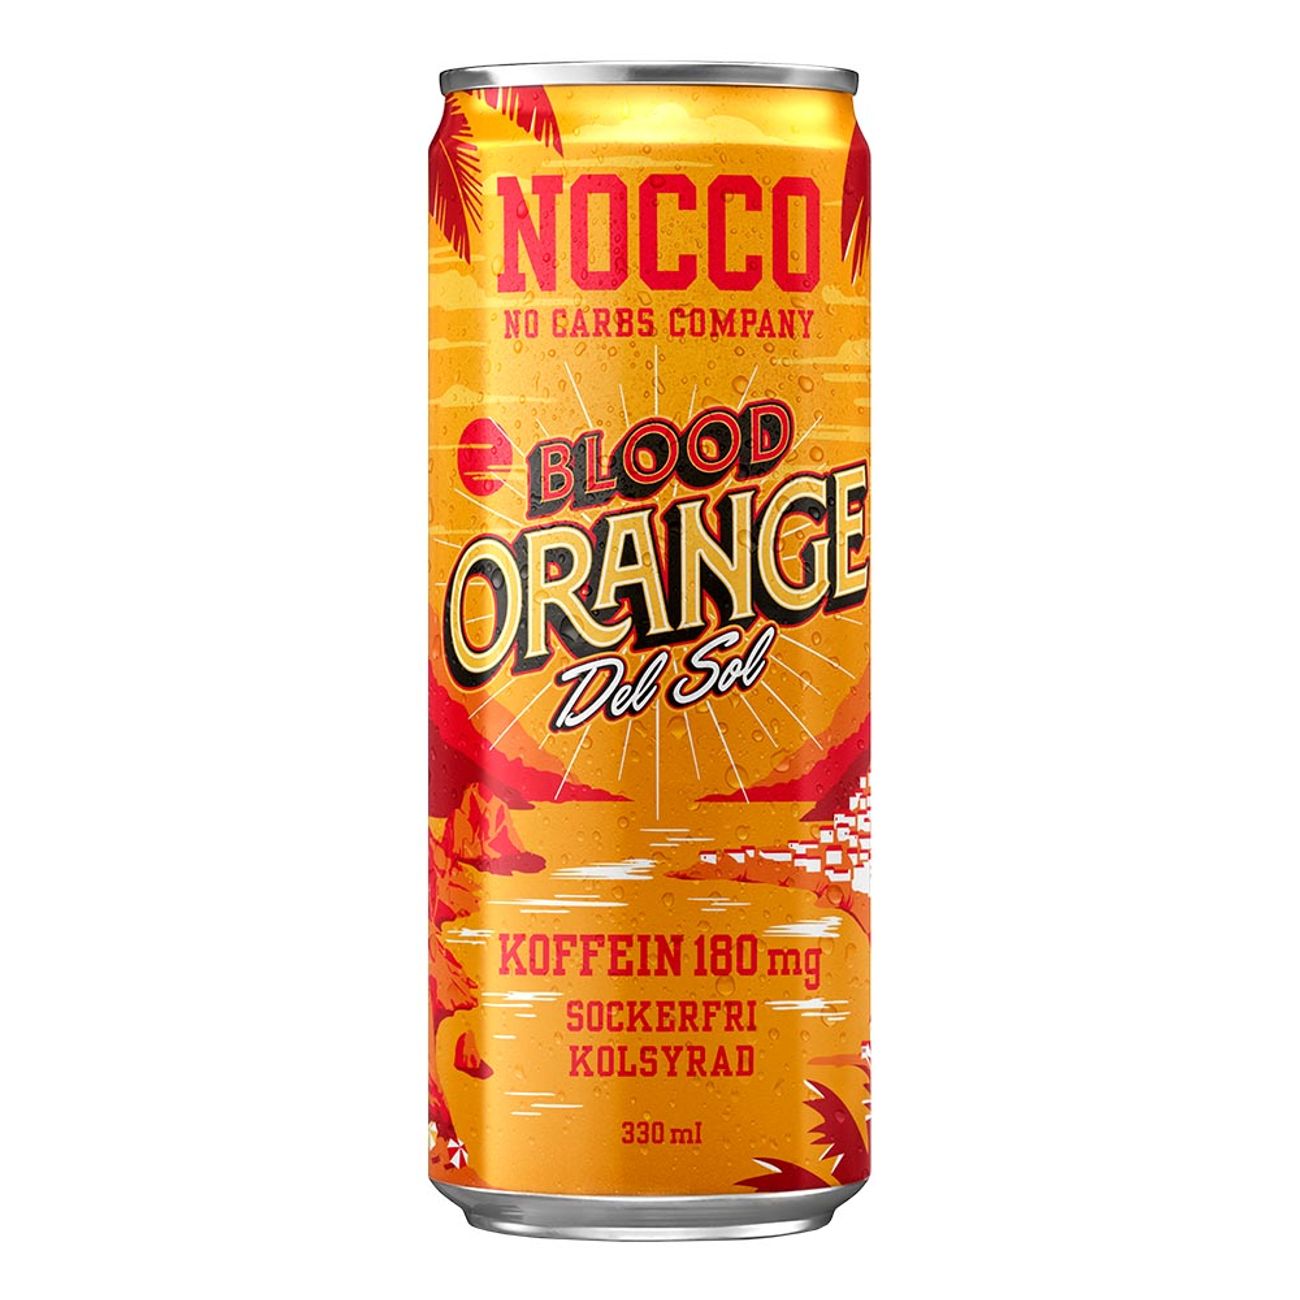 nocco-blood-orange-del-sol-1